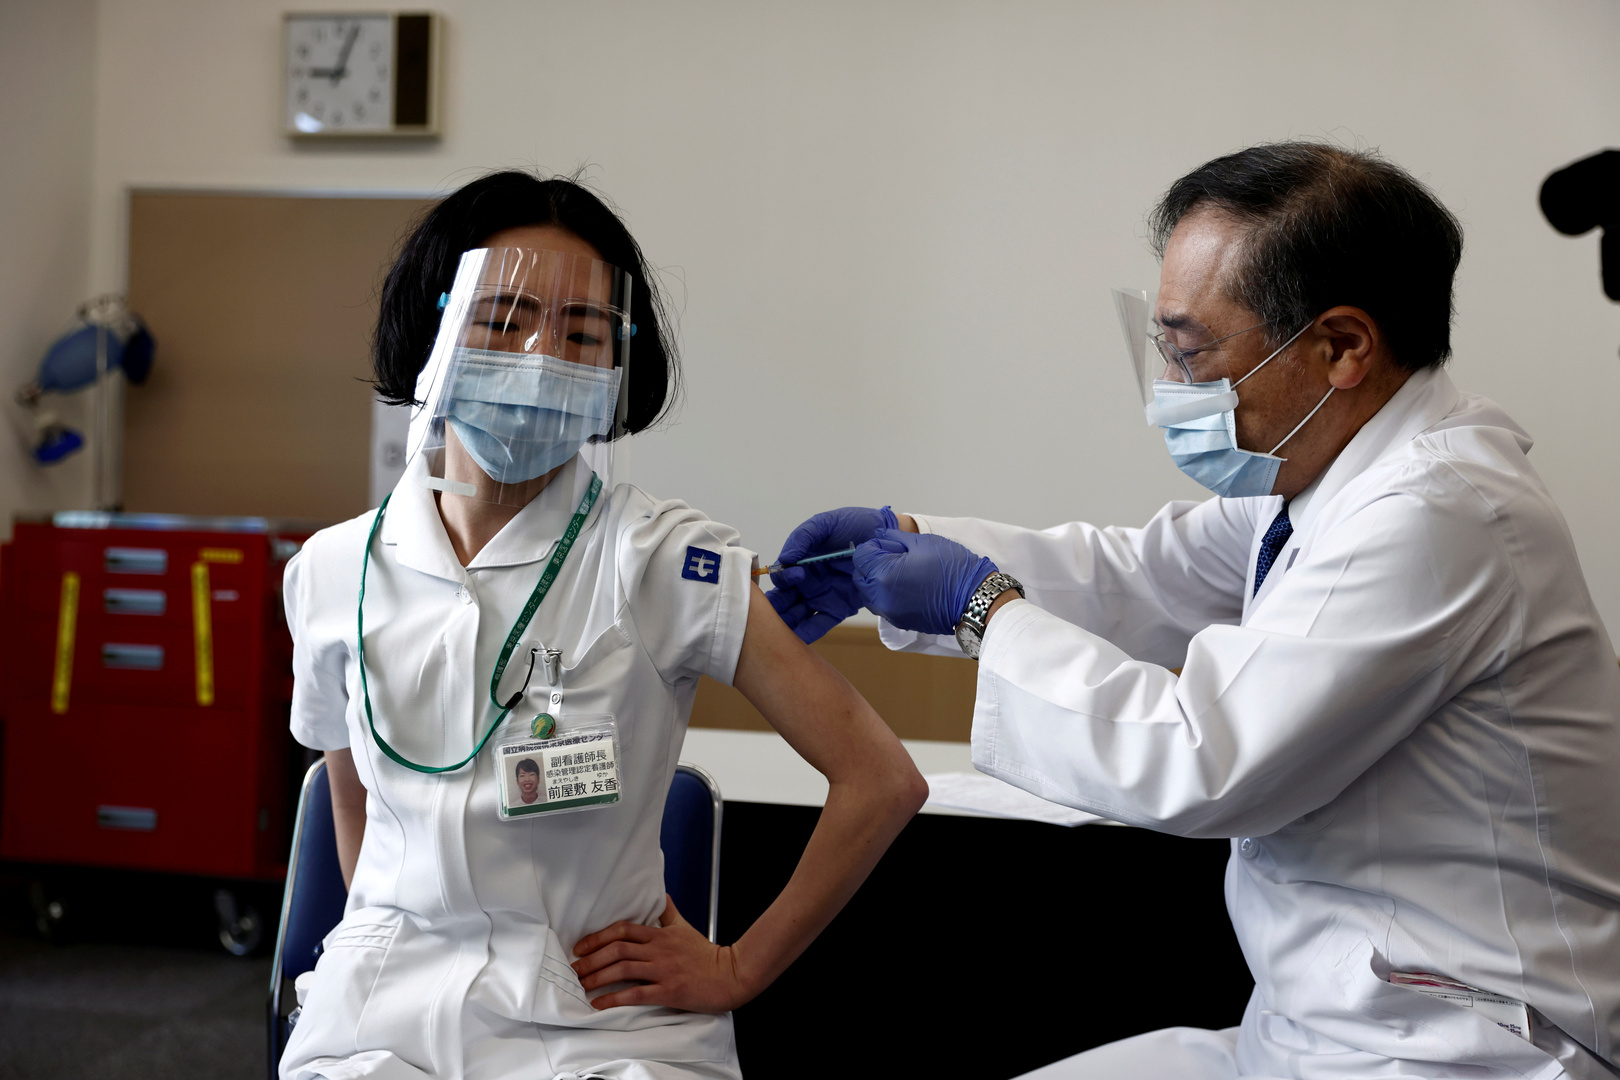 اليابان تبدأ حملة التطعيم ضد كورونا وعينها على الألعاب الأولمبية